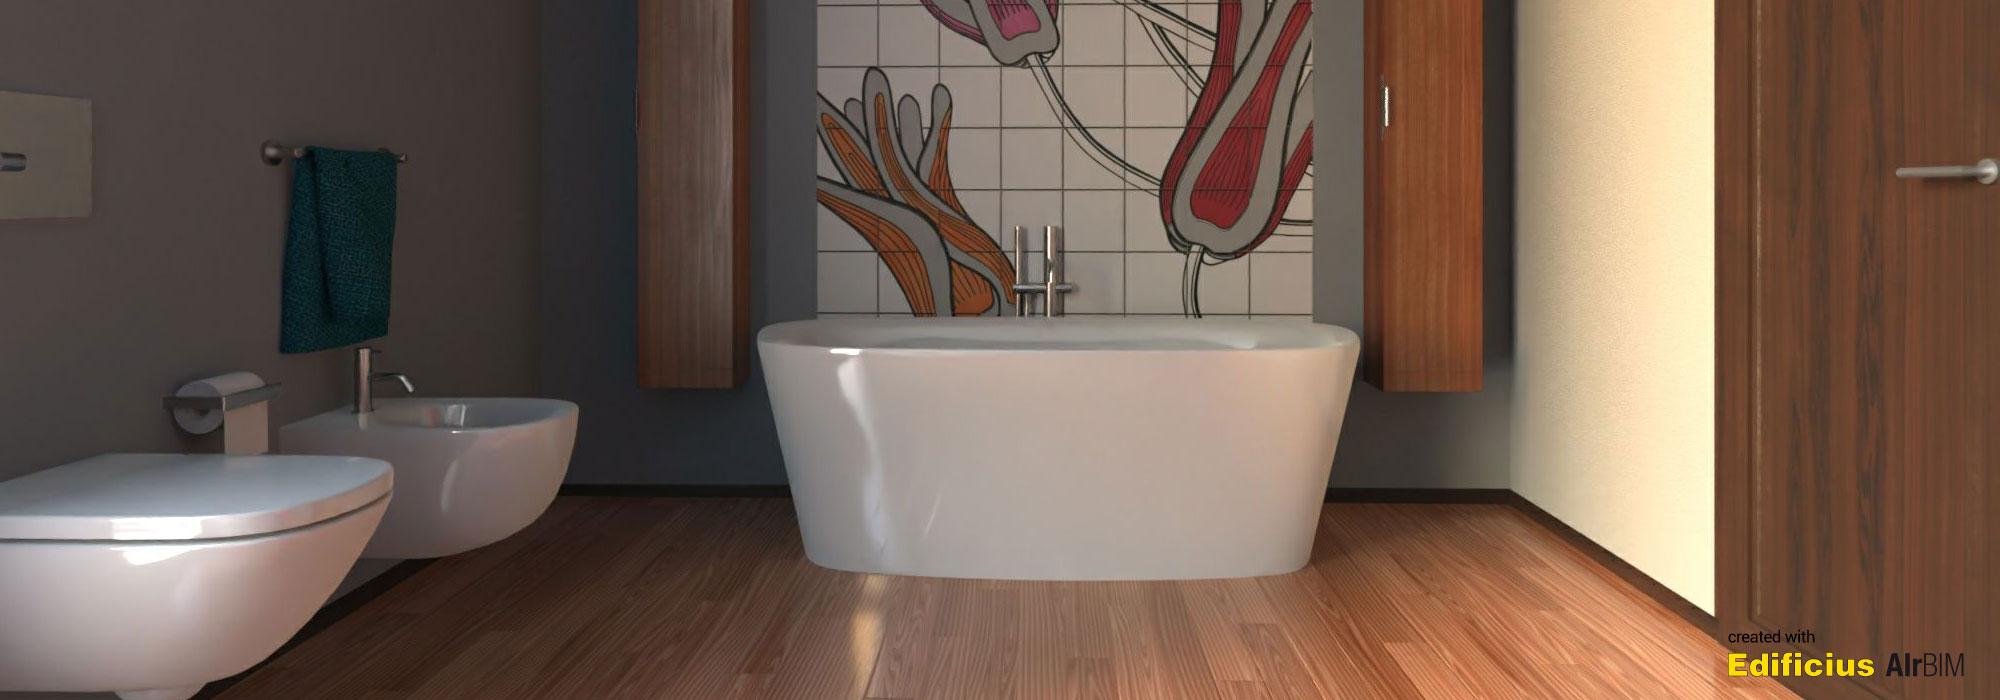 Edificius - Bathroom render